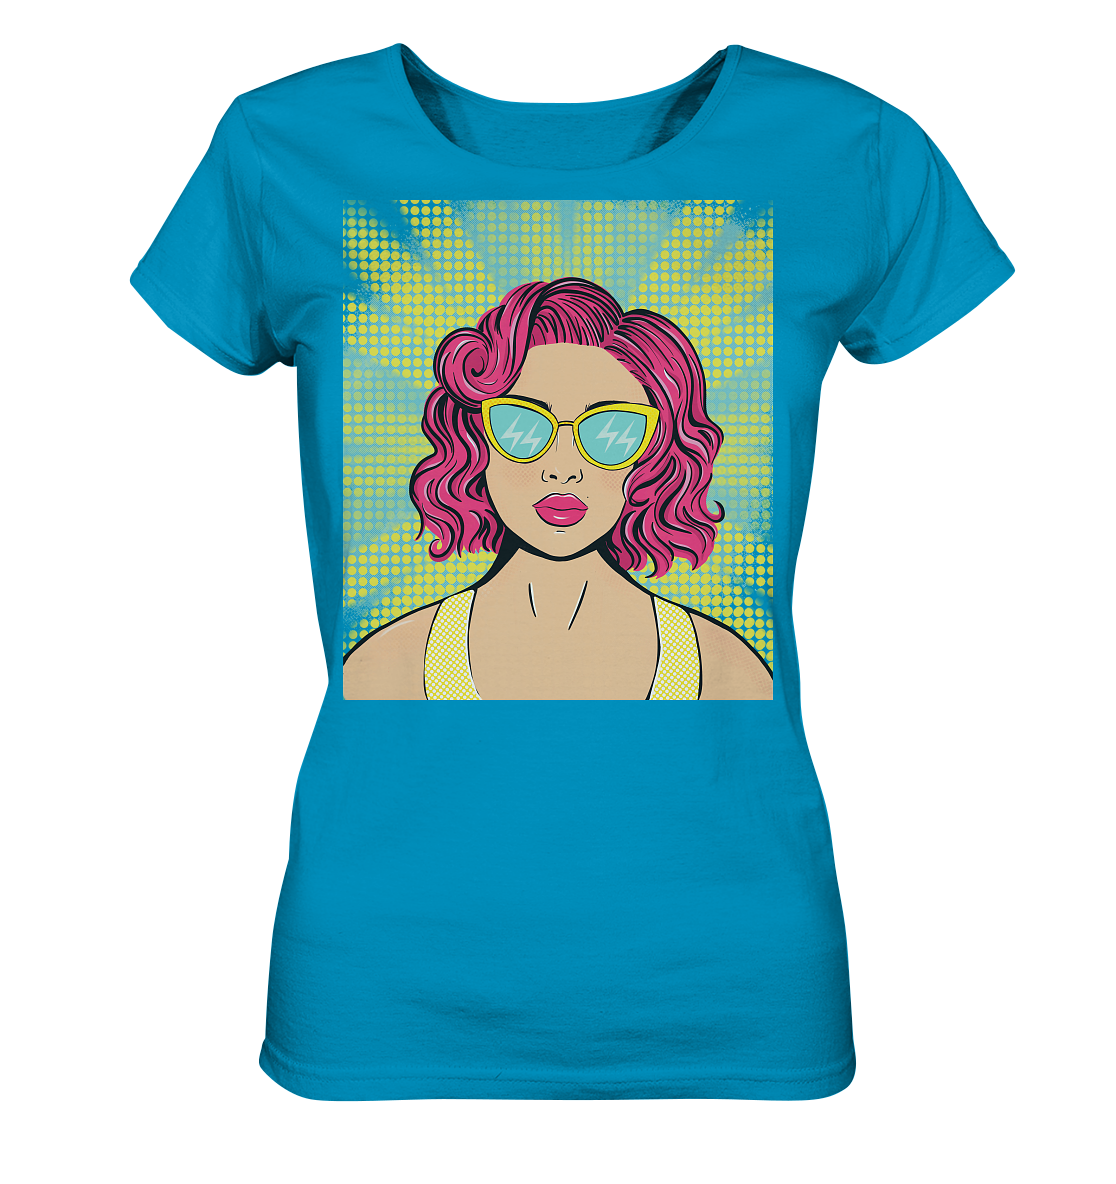 Damen T-Shirt mit Pop Art Design Damen T-Shirt bedruckt mit handgezeichneten Pop Art Design. T-Shirt mit bunten Comic Pop Art Style Print.